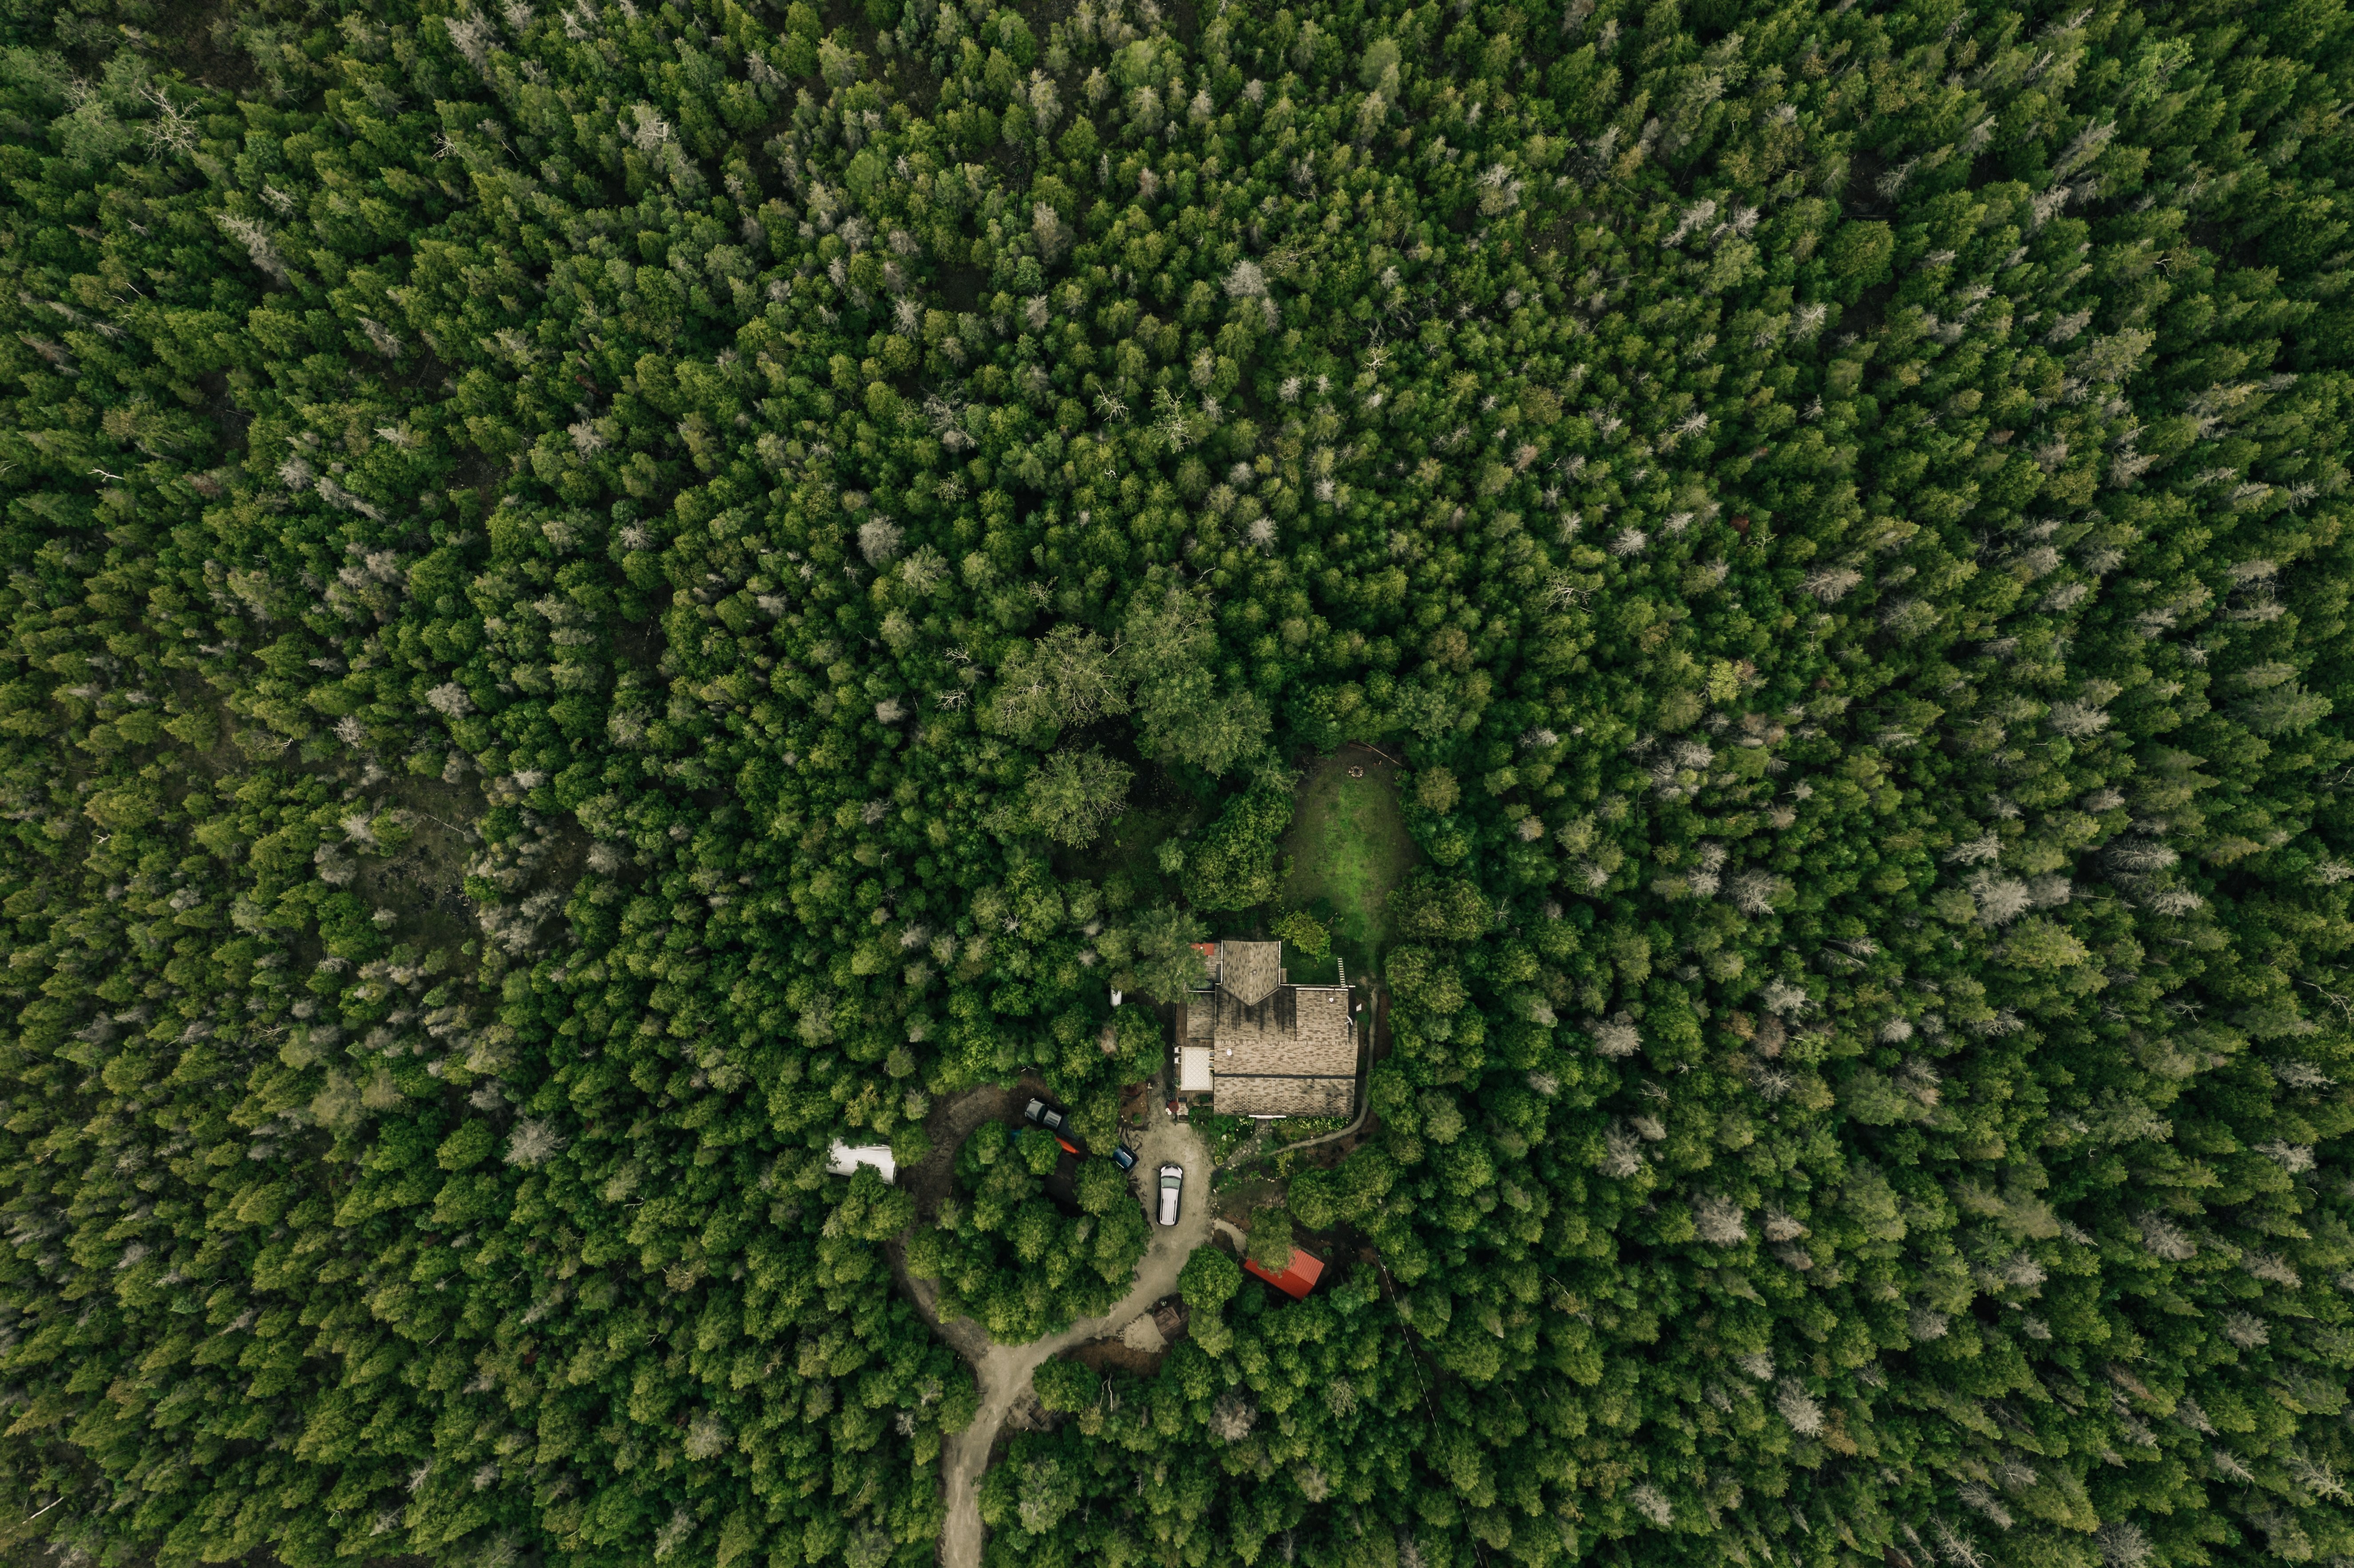 Casa ubicada dentro de un bosque denso Foto